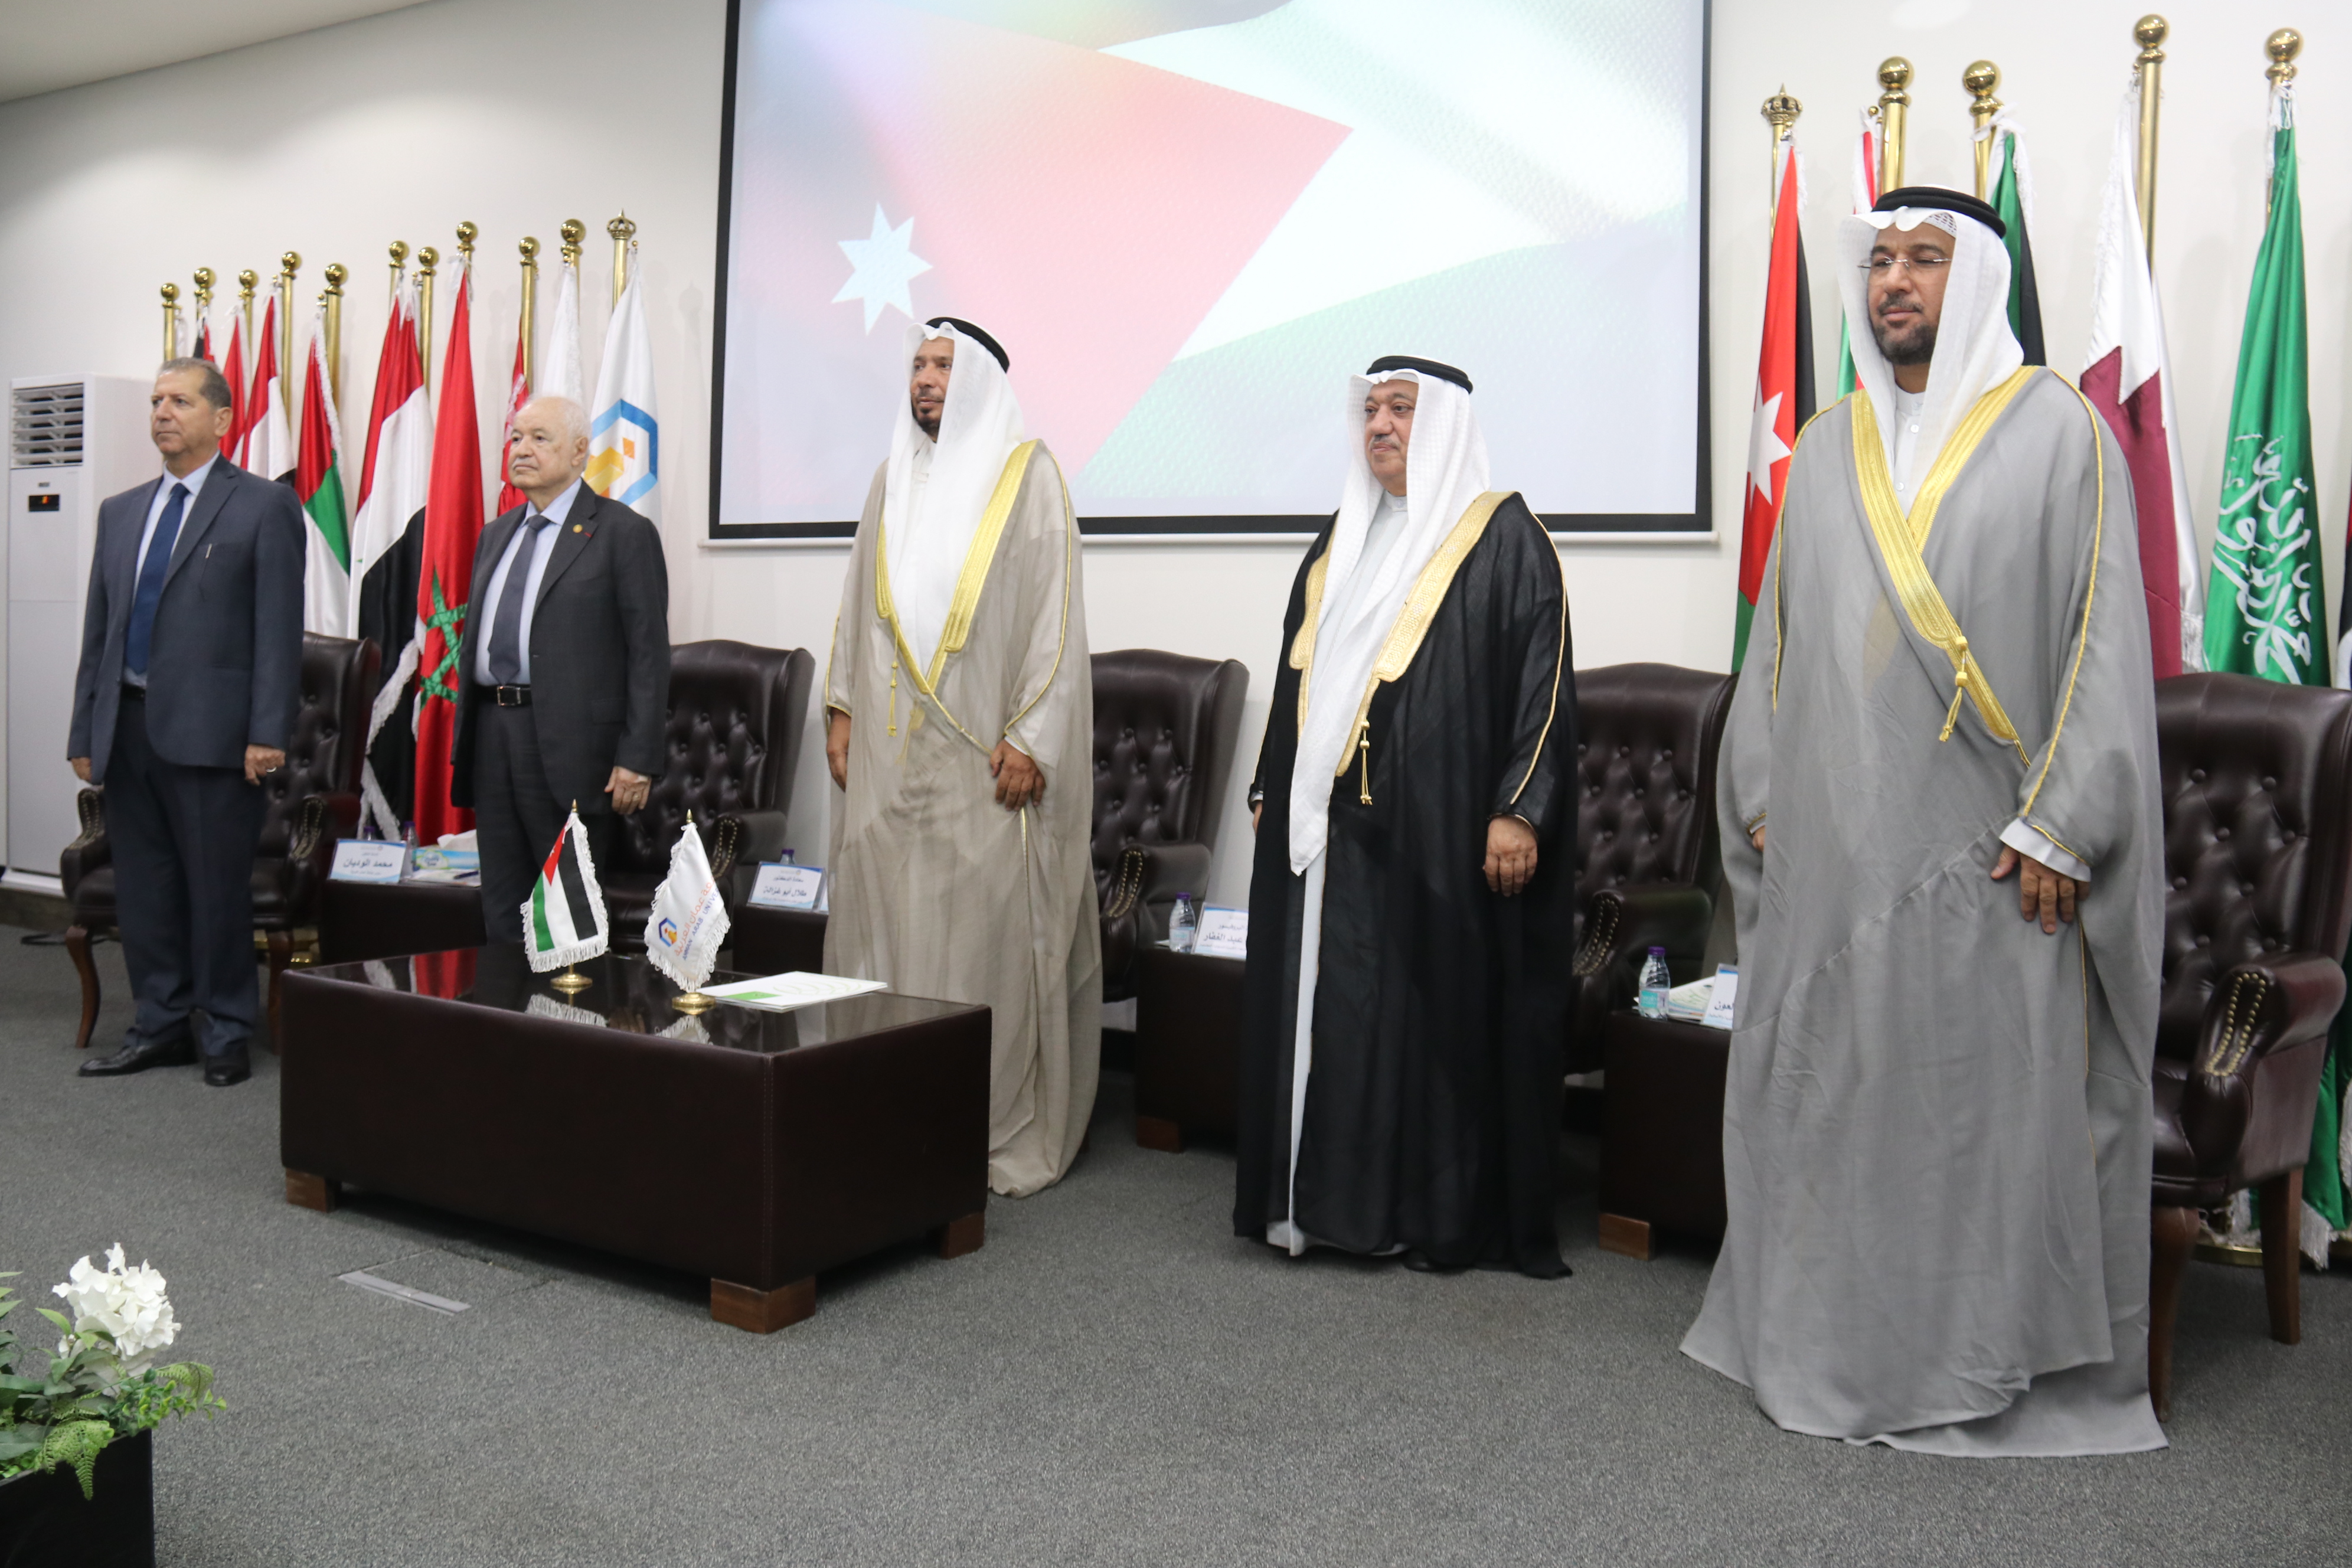 "عمان العربية" تستضيف فعاليات الكونجرس الدولي الثالث للمسؤولية المجتمعية بحضور نوعي من العالم العربي وهيئات الأمم المتحدة 